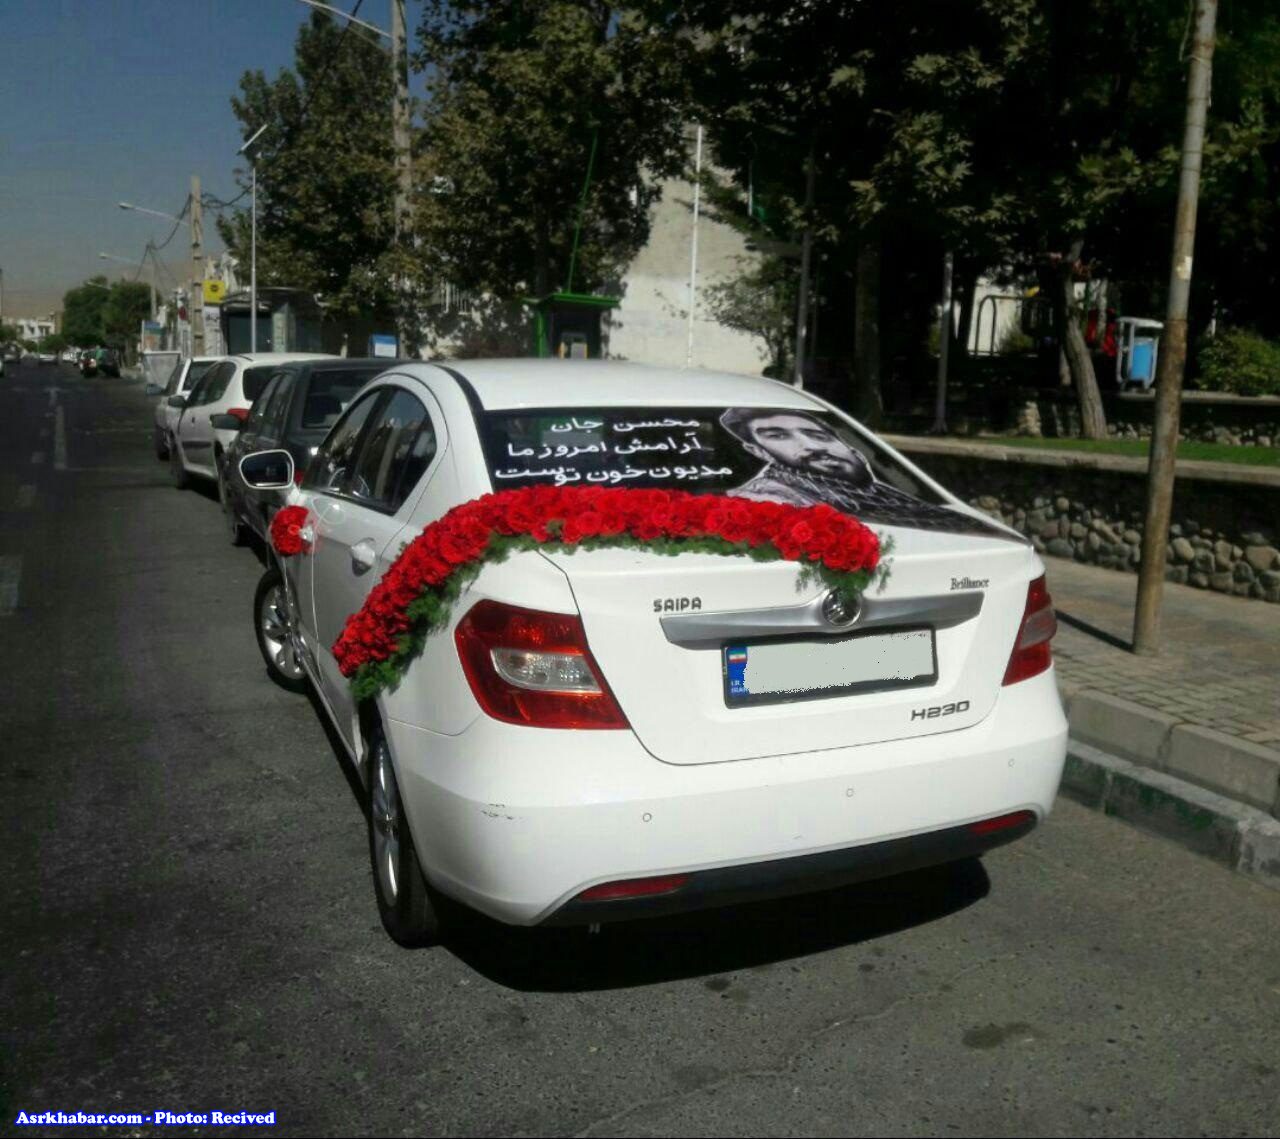 افتخار عروس و داماد تهرانی برای شروع زندگی (+عکس)